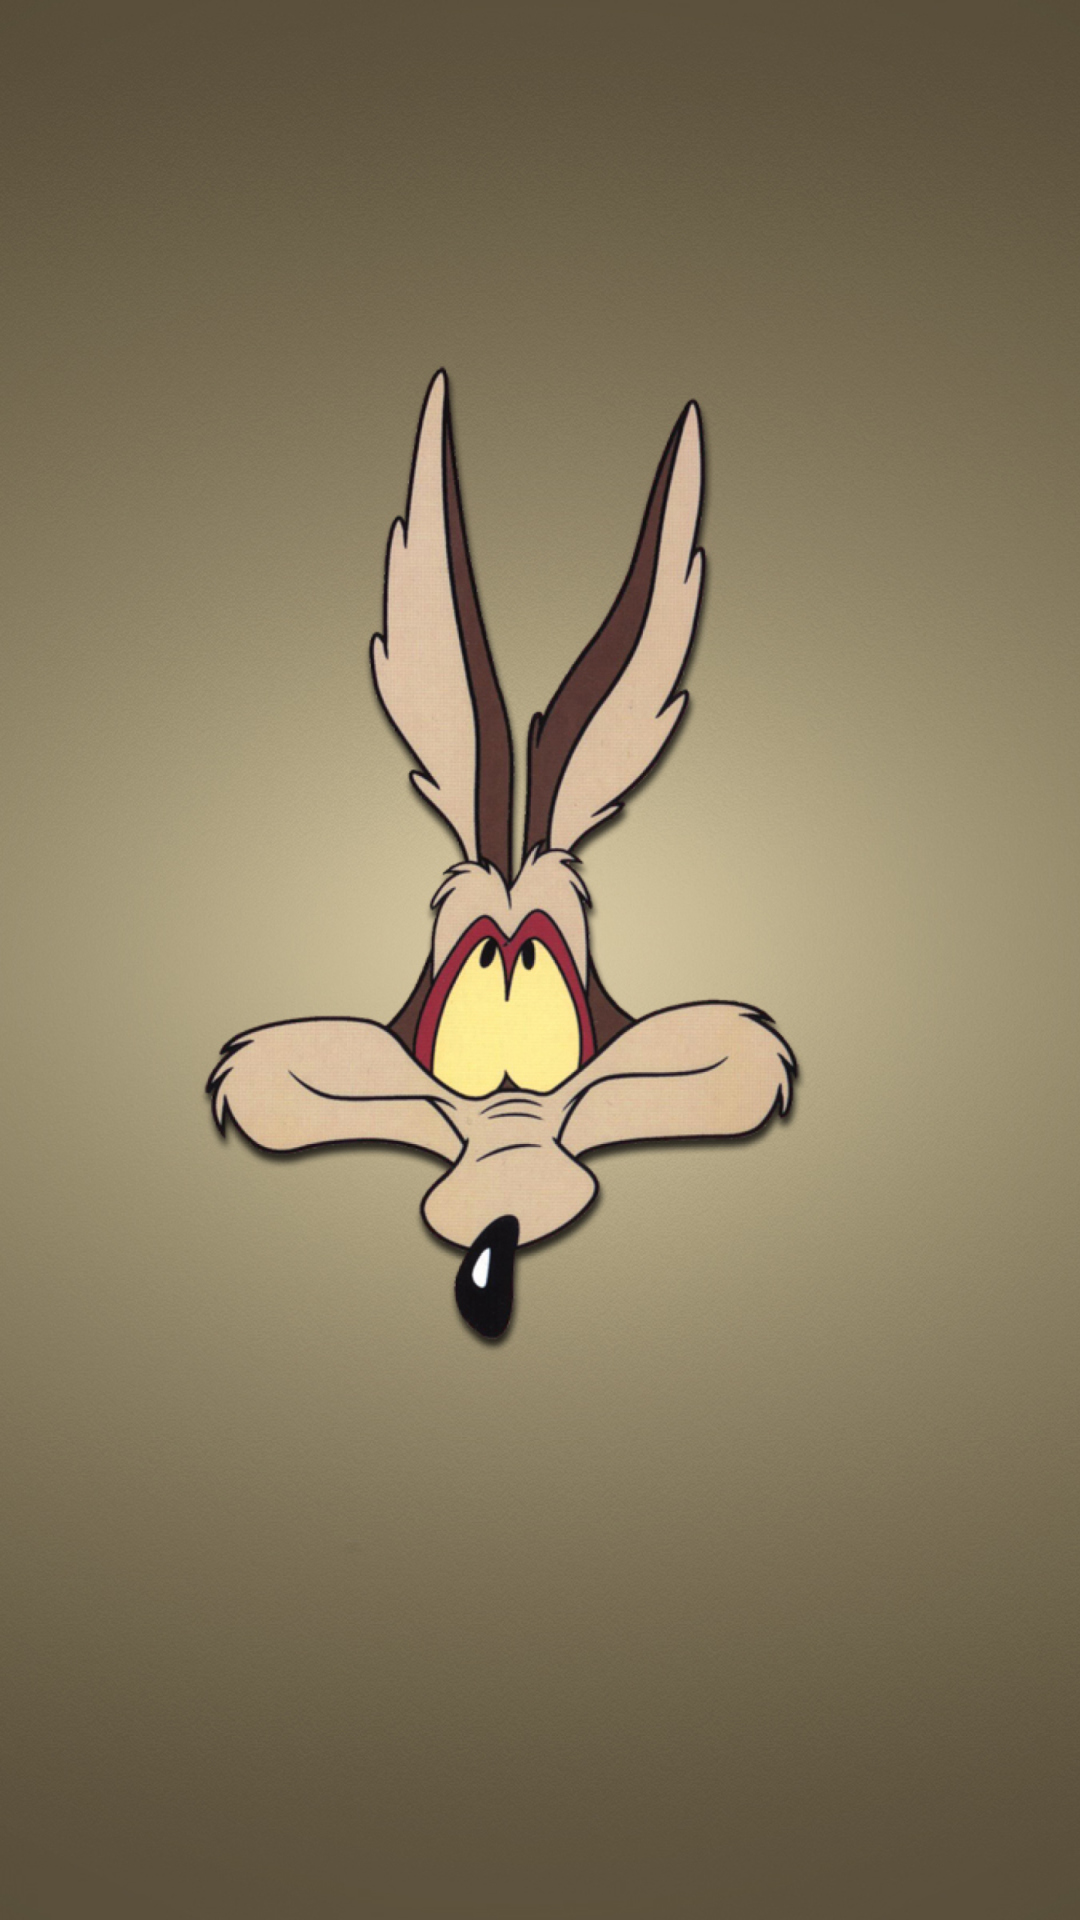 Das Looney Tunes Wile E. Coyote Wallpaper 1080x1920